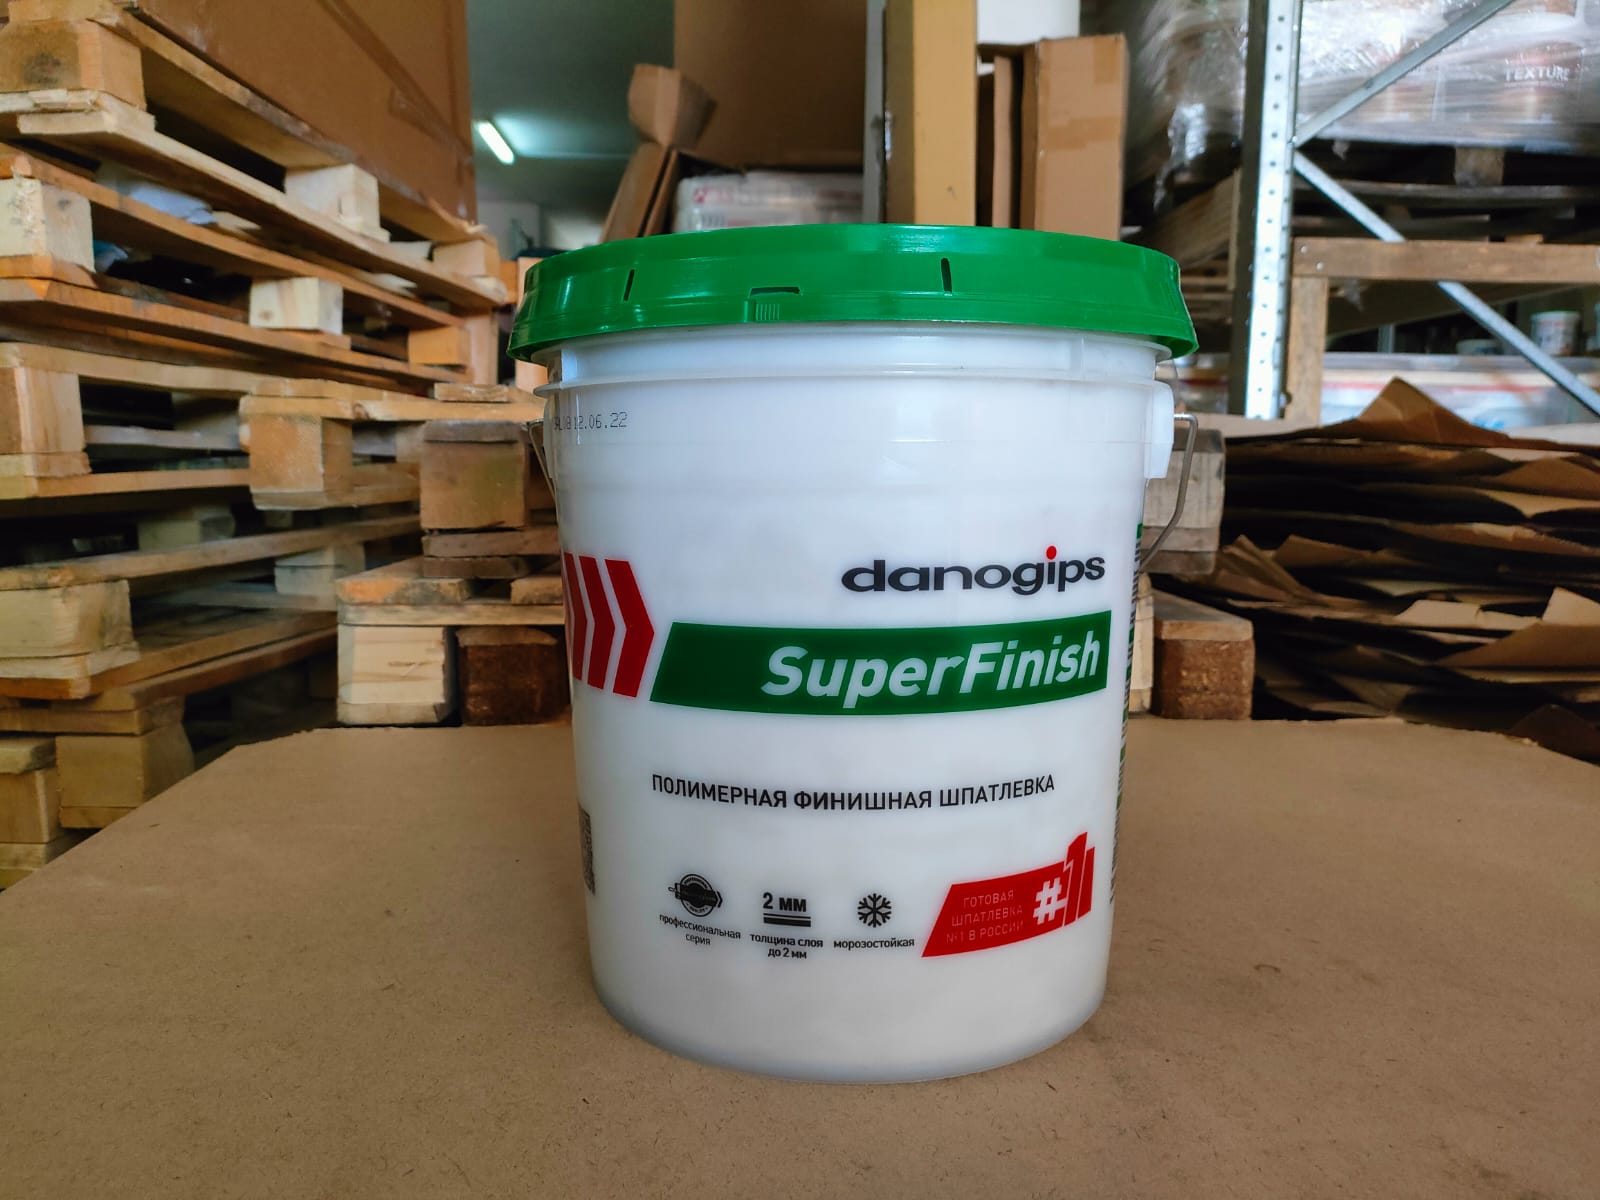 Полимерная финишная шпатлевка Danogips SuperFinish 28 кг / Даногипс СуперФиниш 17 л